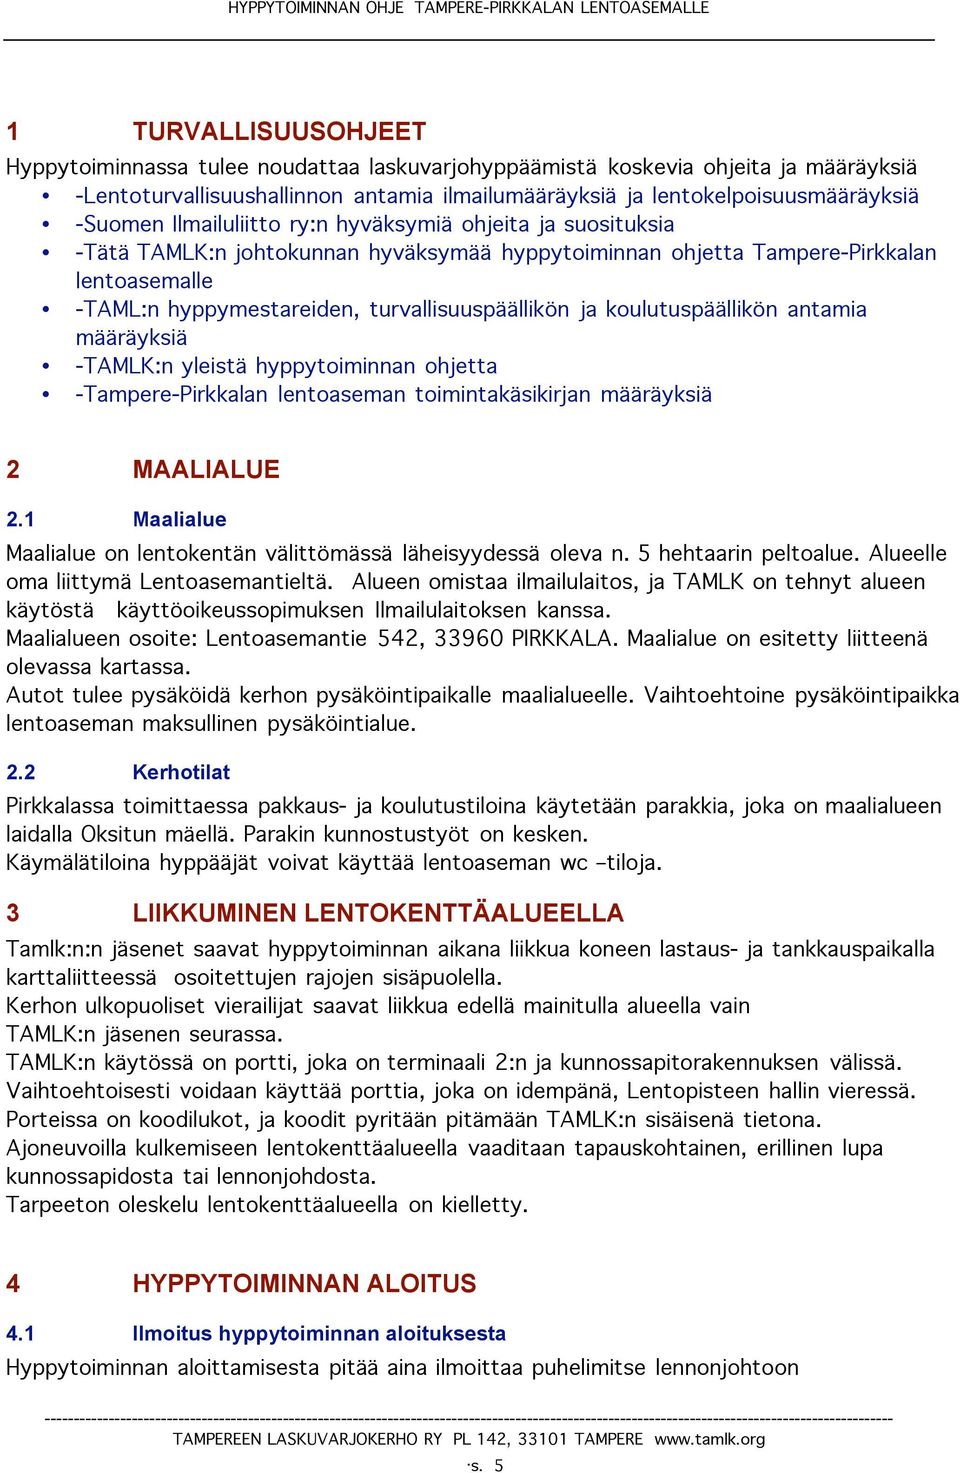 koulutuspäällikön antamia määräyksiä -TAMLK:n yleistä hyppytoiminnan ohjetta -Tampere-Pirkkalan lentoaseman toimintakäsikirjan määräyksiä 2 MAALIALUE 2.